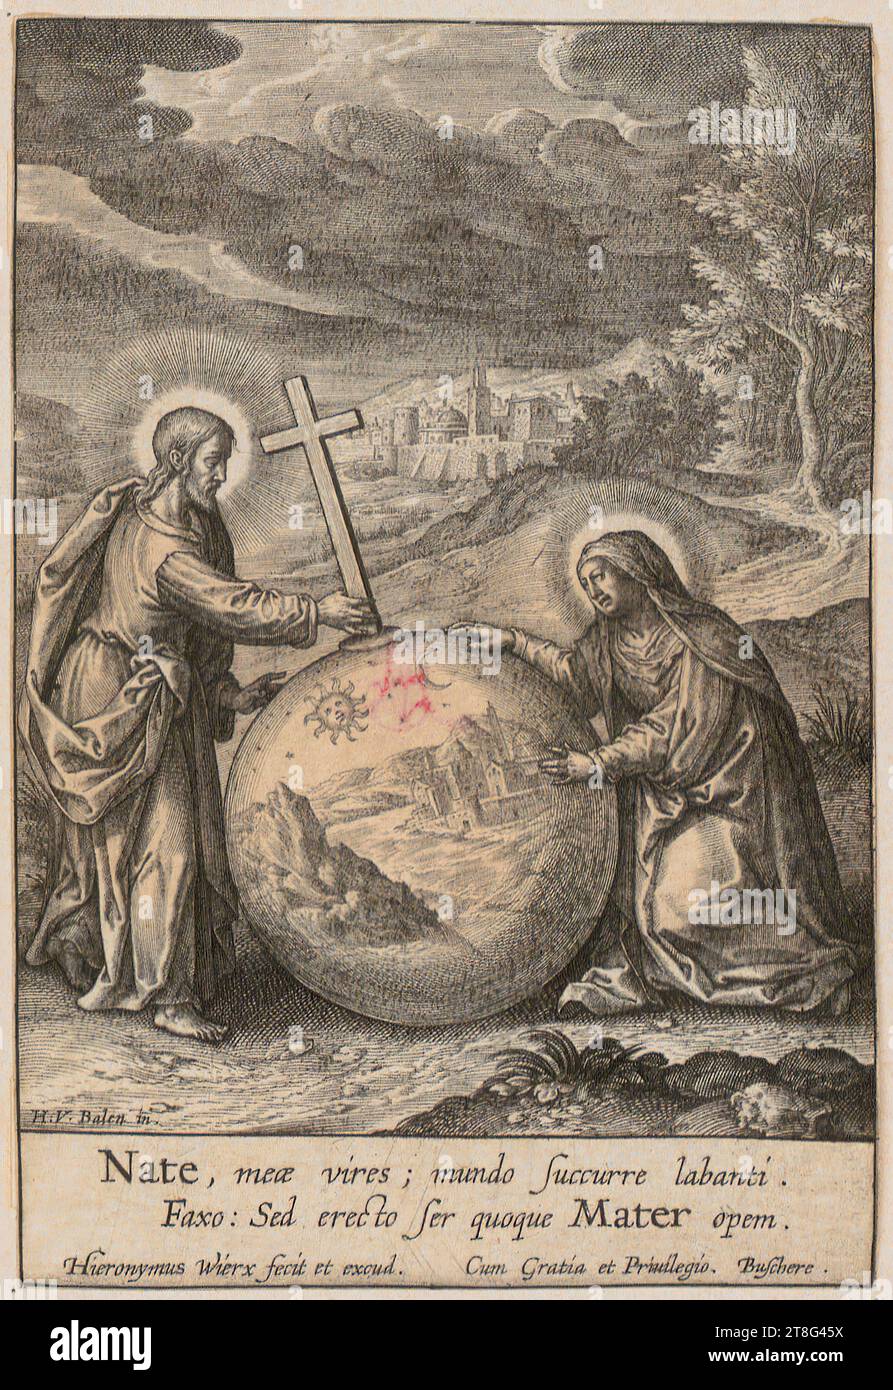 Hieronymus Wierix (1553 - 1619)Hendrick van Balen (1575 - 1632), d'après, Salvator Mundi und Jungfrau Maria, origine de l'estampe : avant 1619, gravure sur cuivre, dimensions de la feuille : 13,4 x 9,0 cm, en bas à gauche inscrit 'H.V. Balen in.' ; en bas inscrit 'Nate, meæ vires ; mundo succurre labanti Banque D'Images